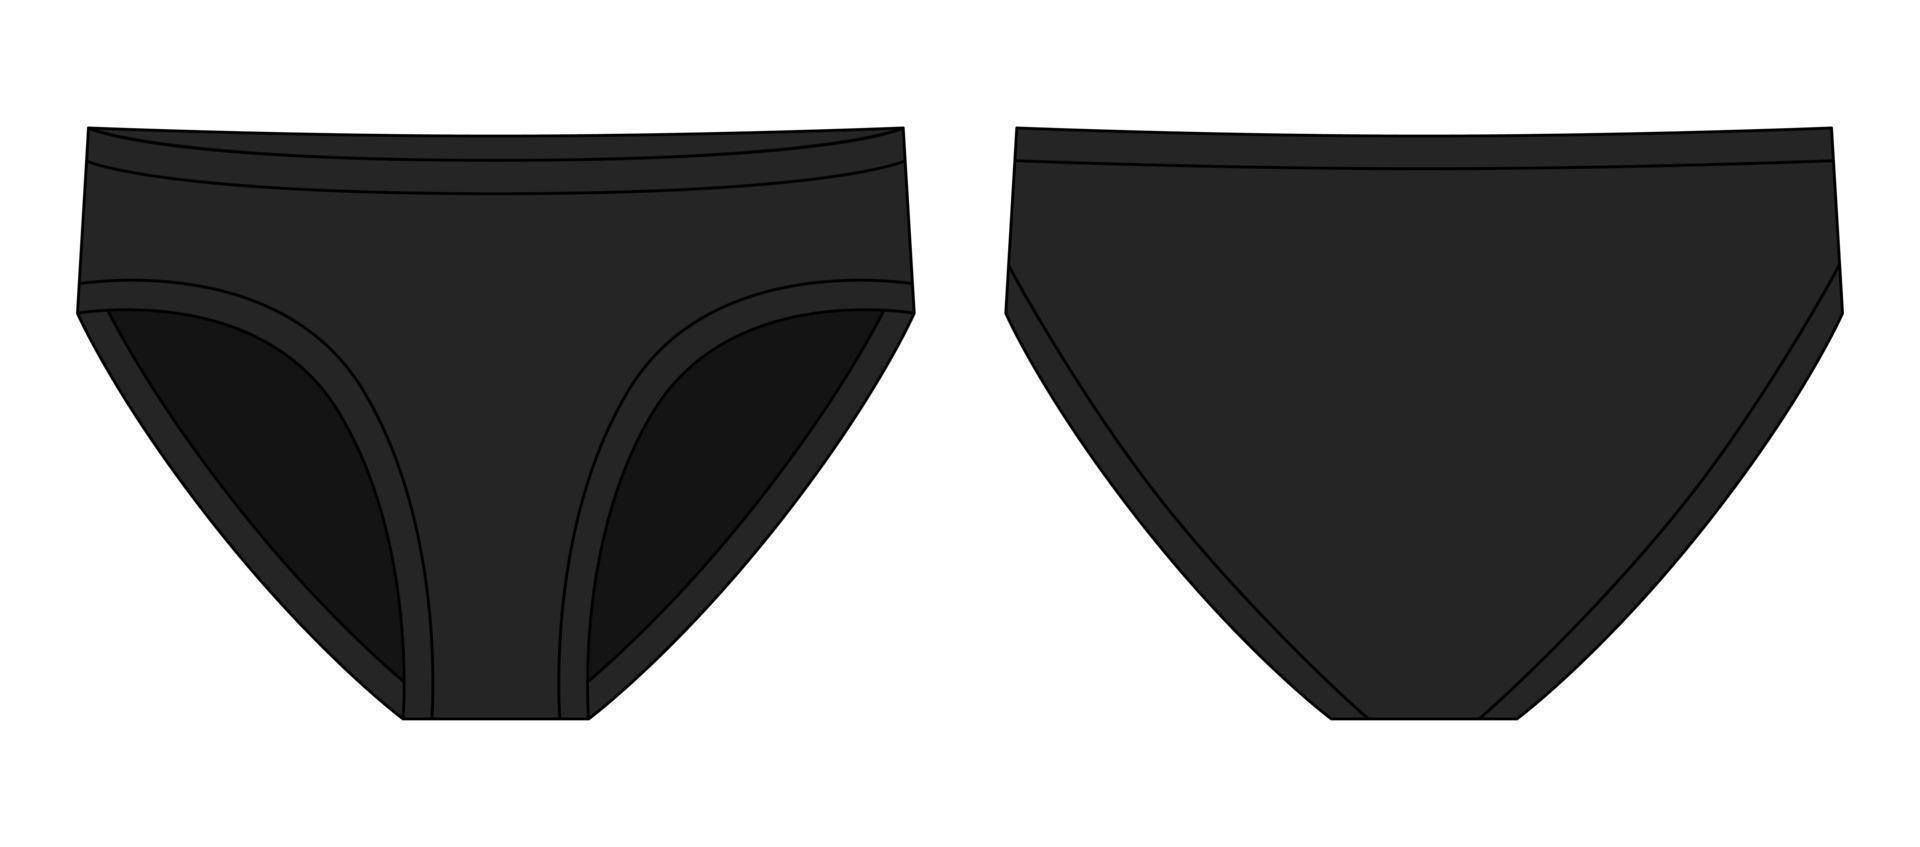 illustration de croquis technique de culotte de filles. couleur noire. caleçons pour enfants. vecteur